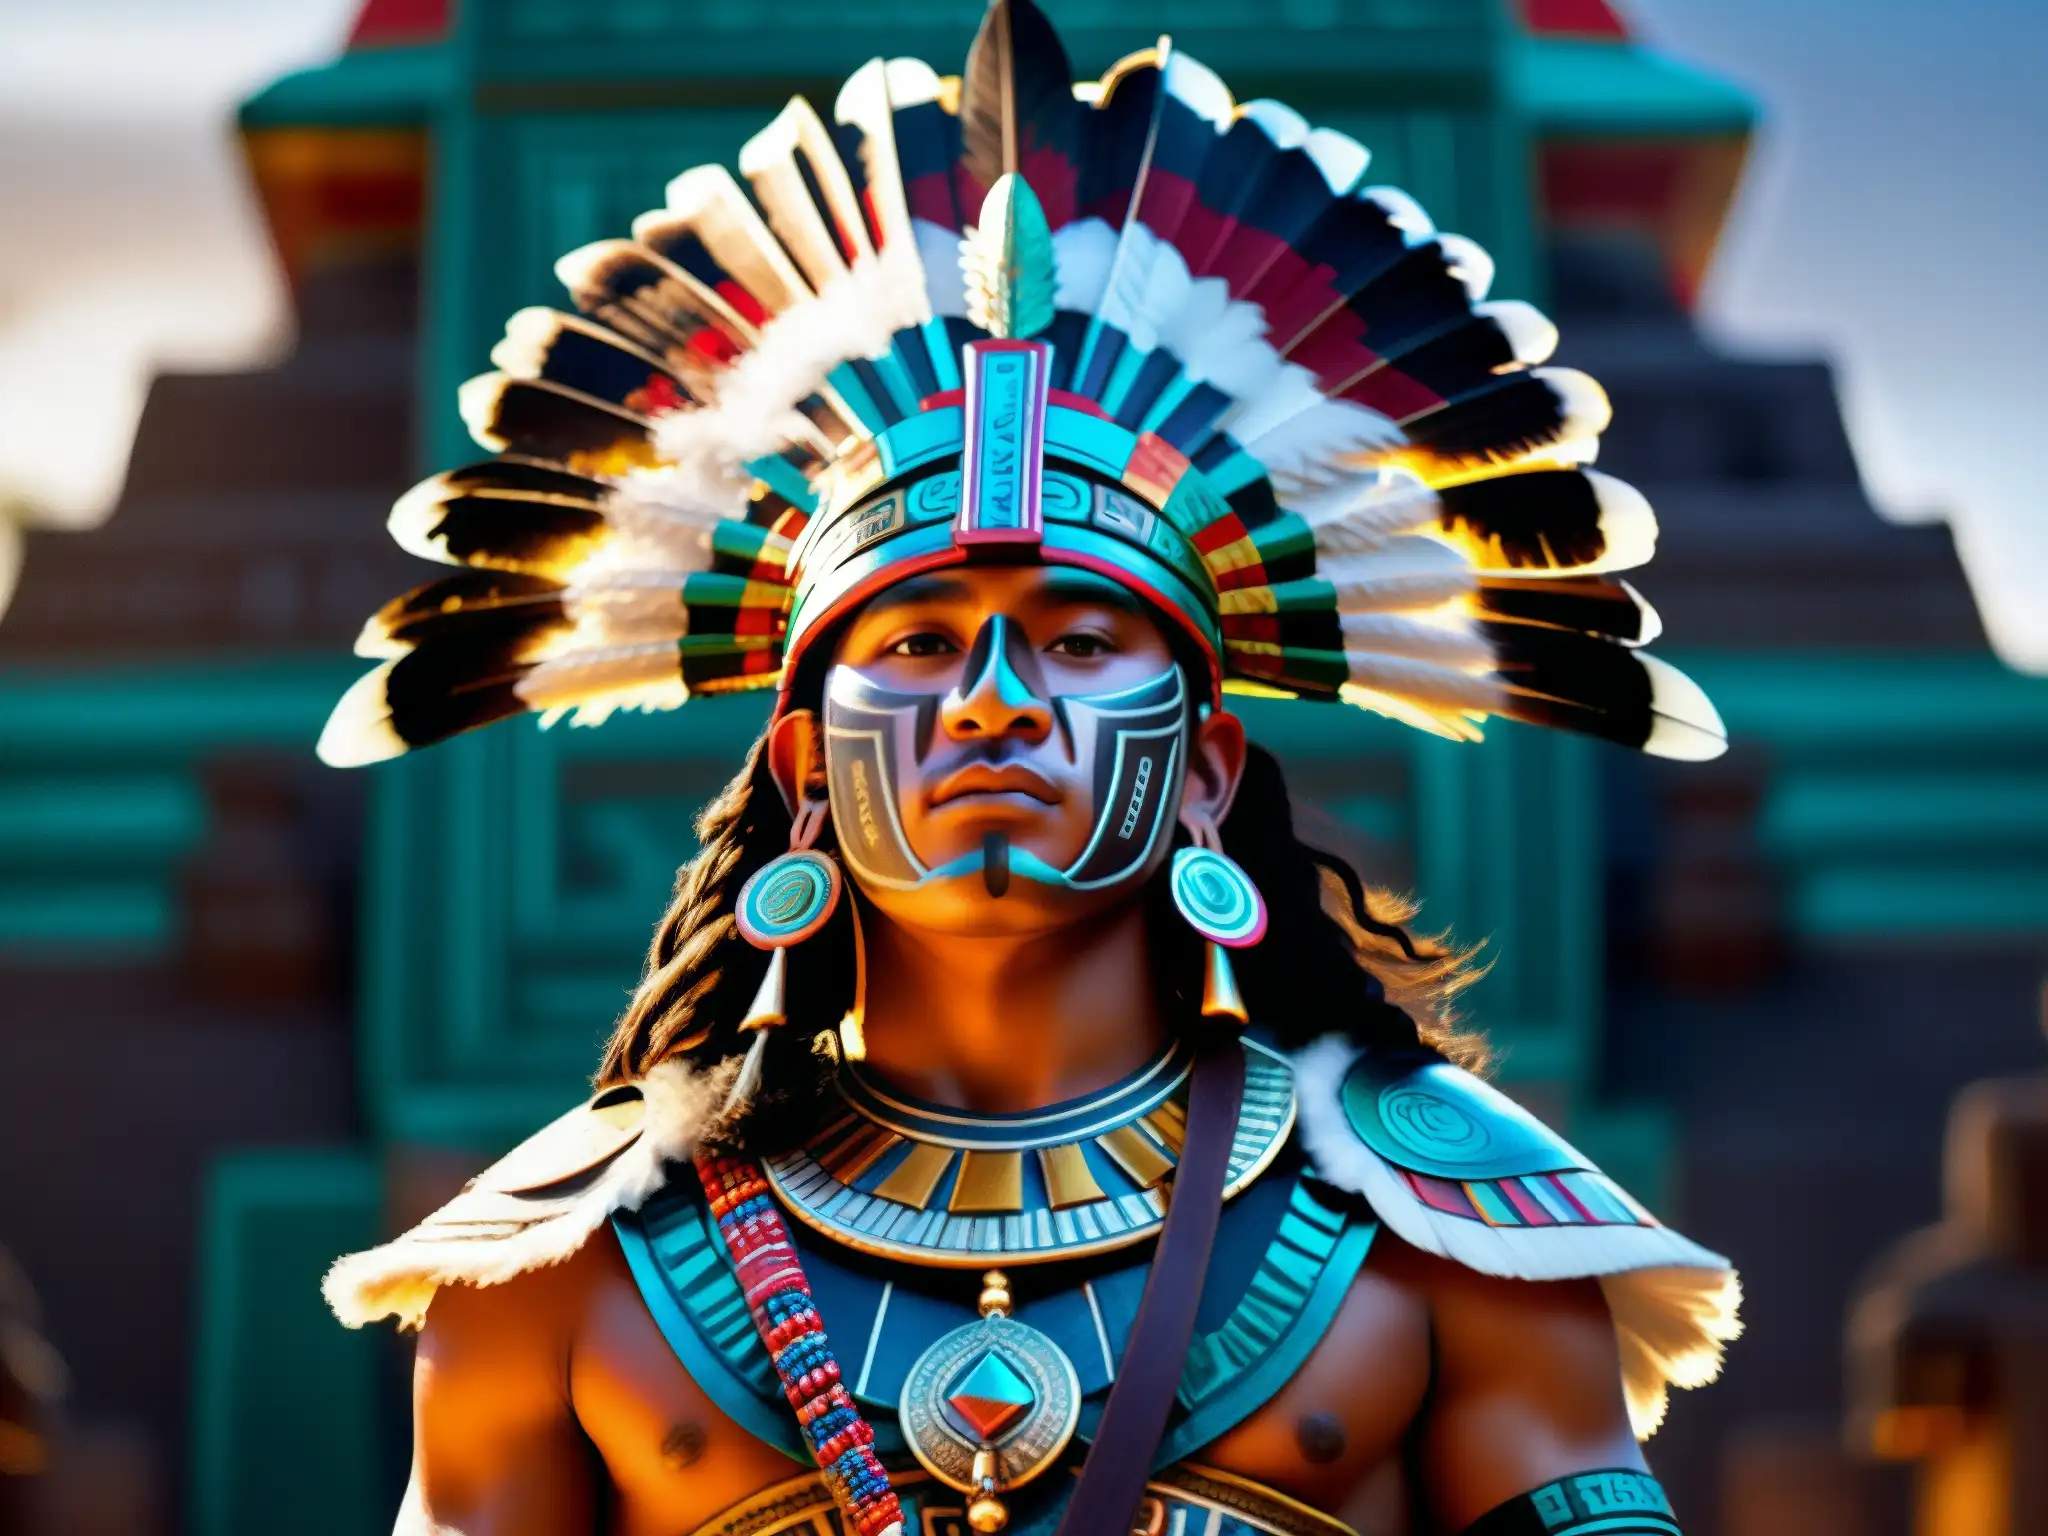 Un valiente guerrero azteca con atuendo ceremonial y un templo prehispánico en penumbra